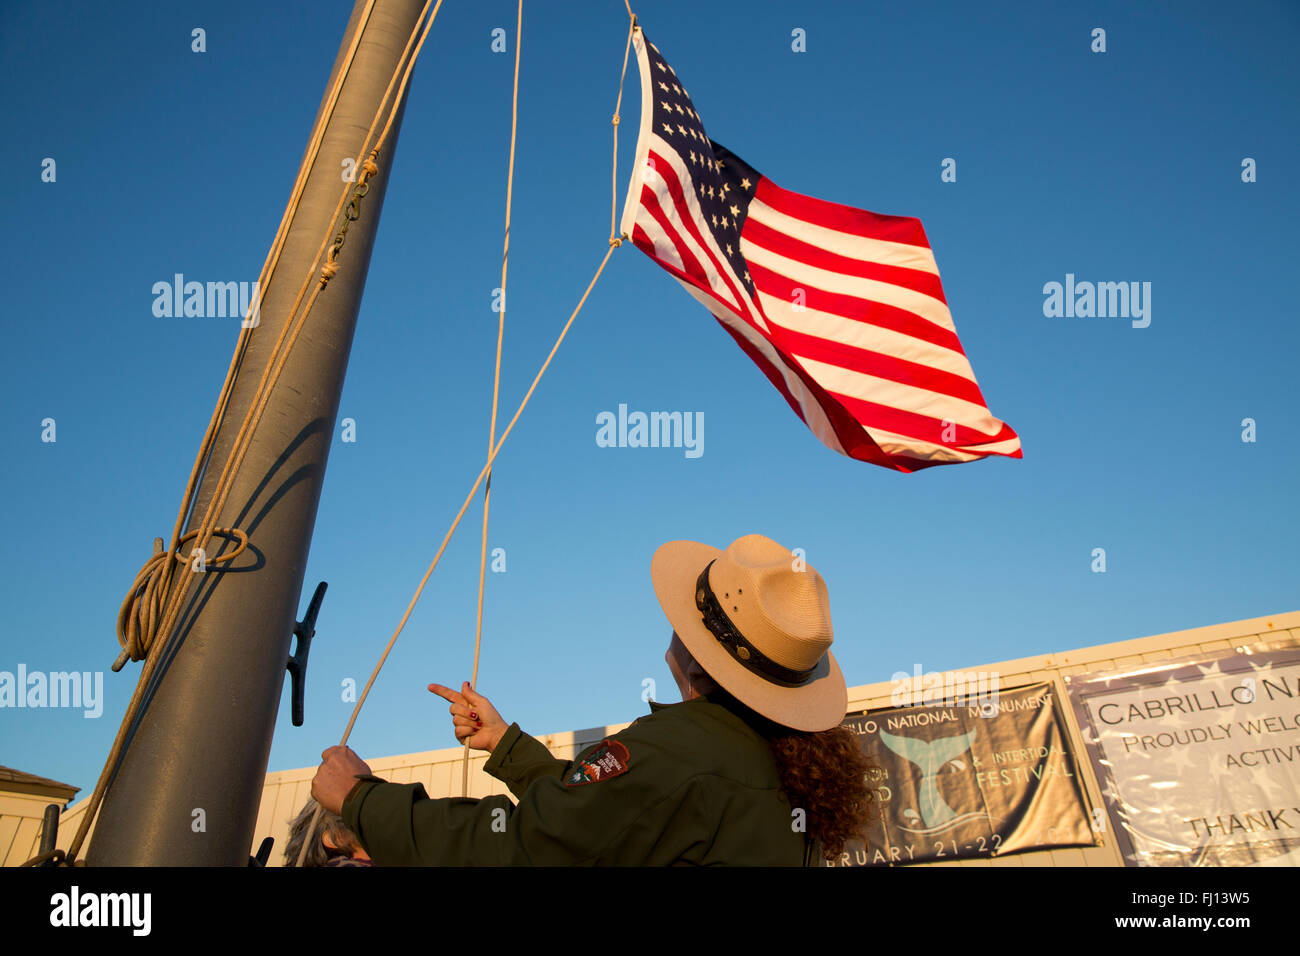 Un garde forestier du parc s'abaisse le drapeau, Cabrillo National Monument, San Diego Californie Banque D'Images